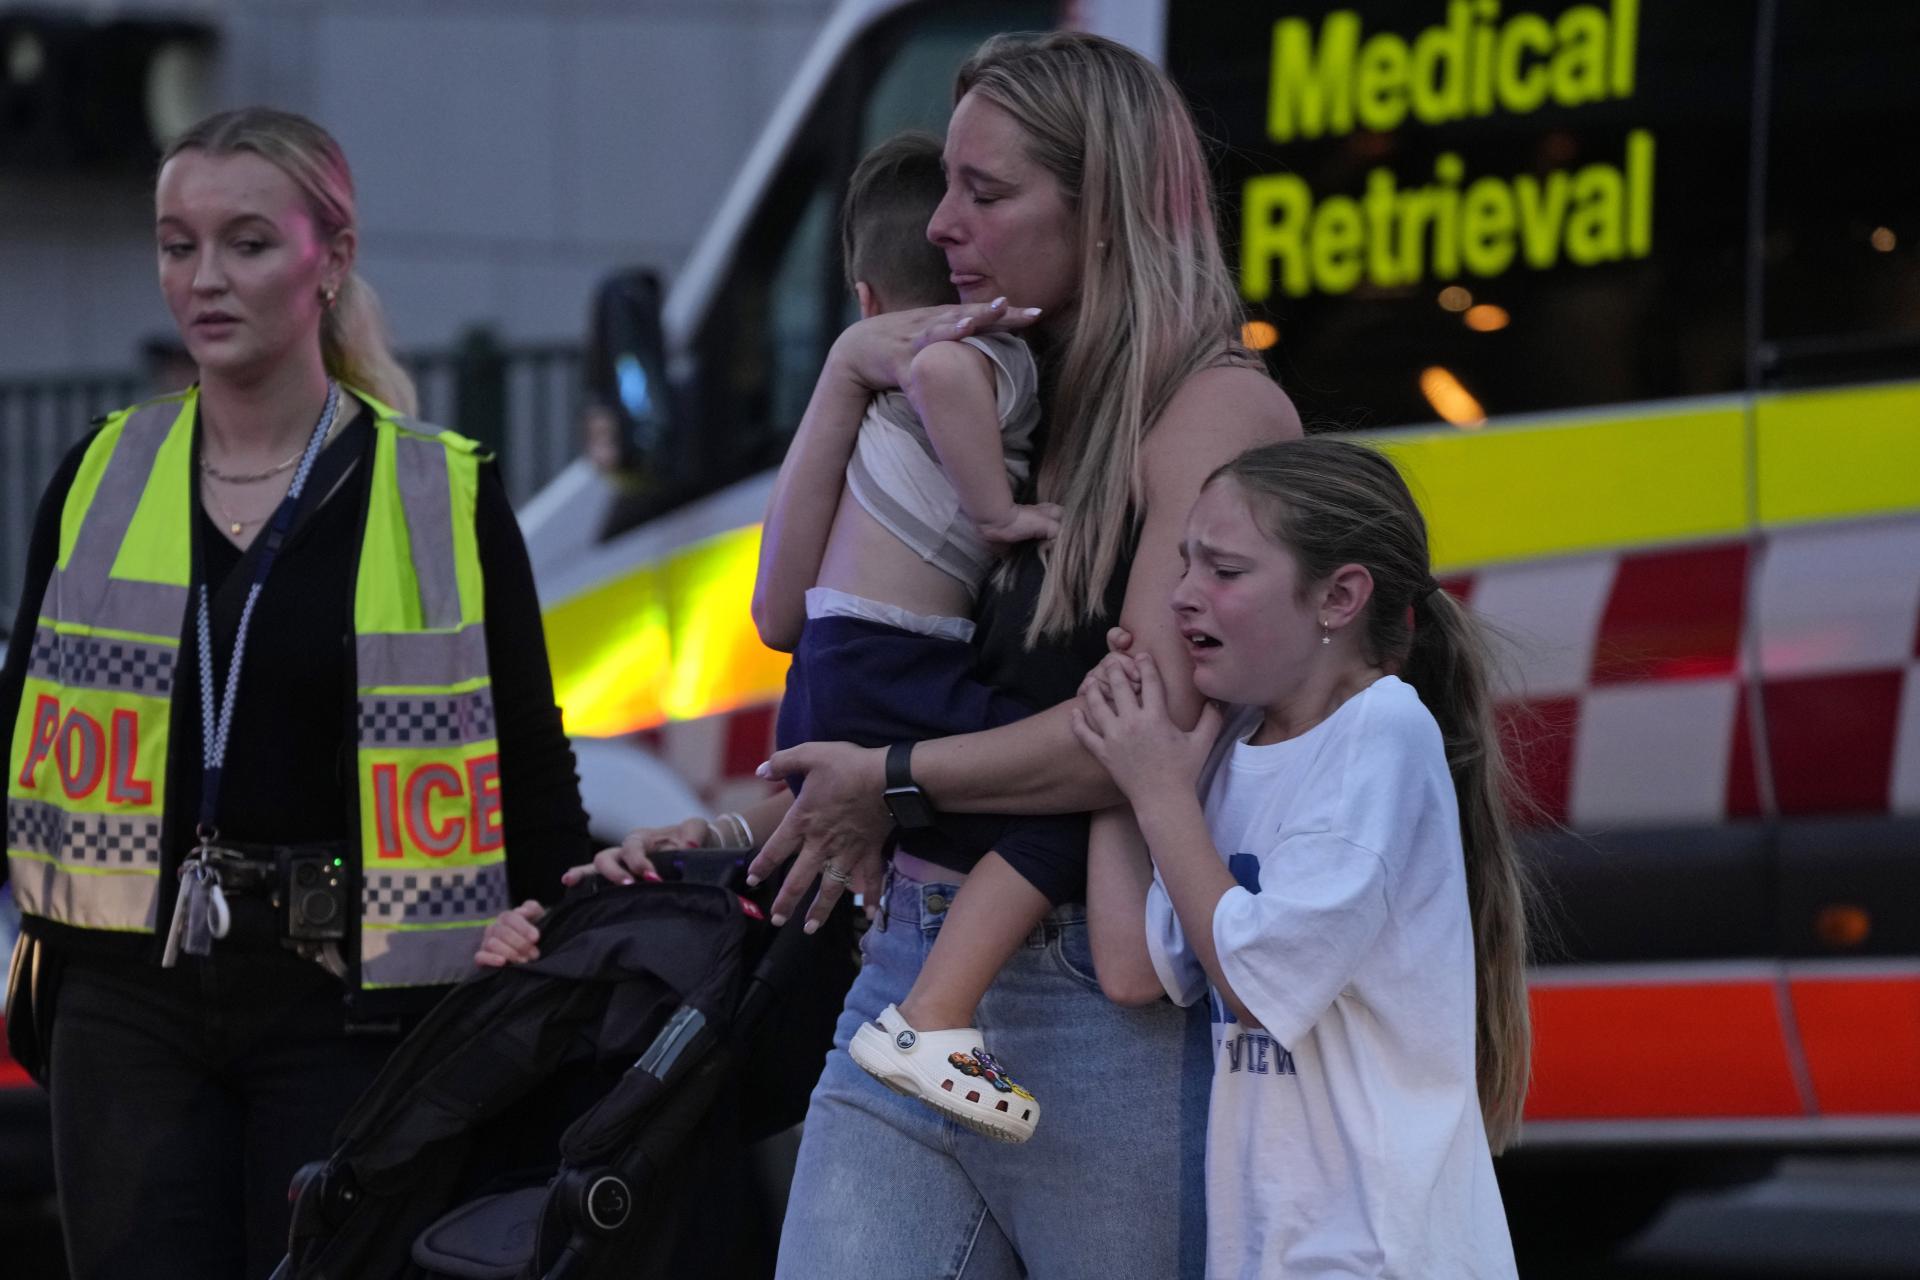 Po útoku nožom v Sydney zahynulo päť ľudí. Útočník je mŕtvy, oznámila polícia